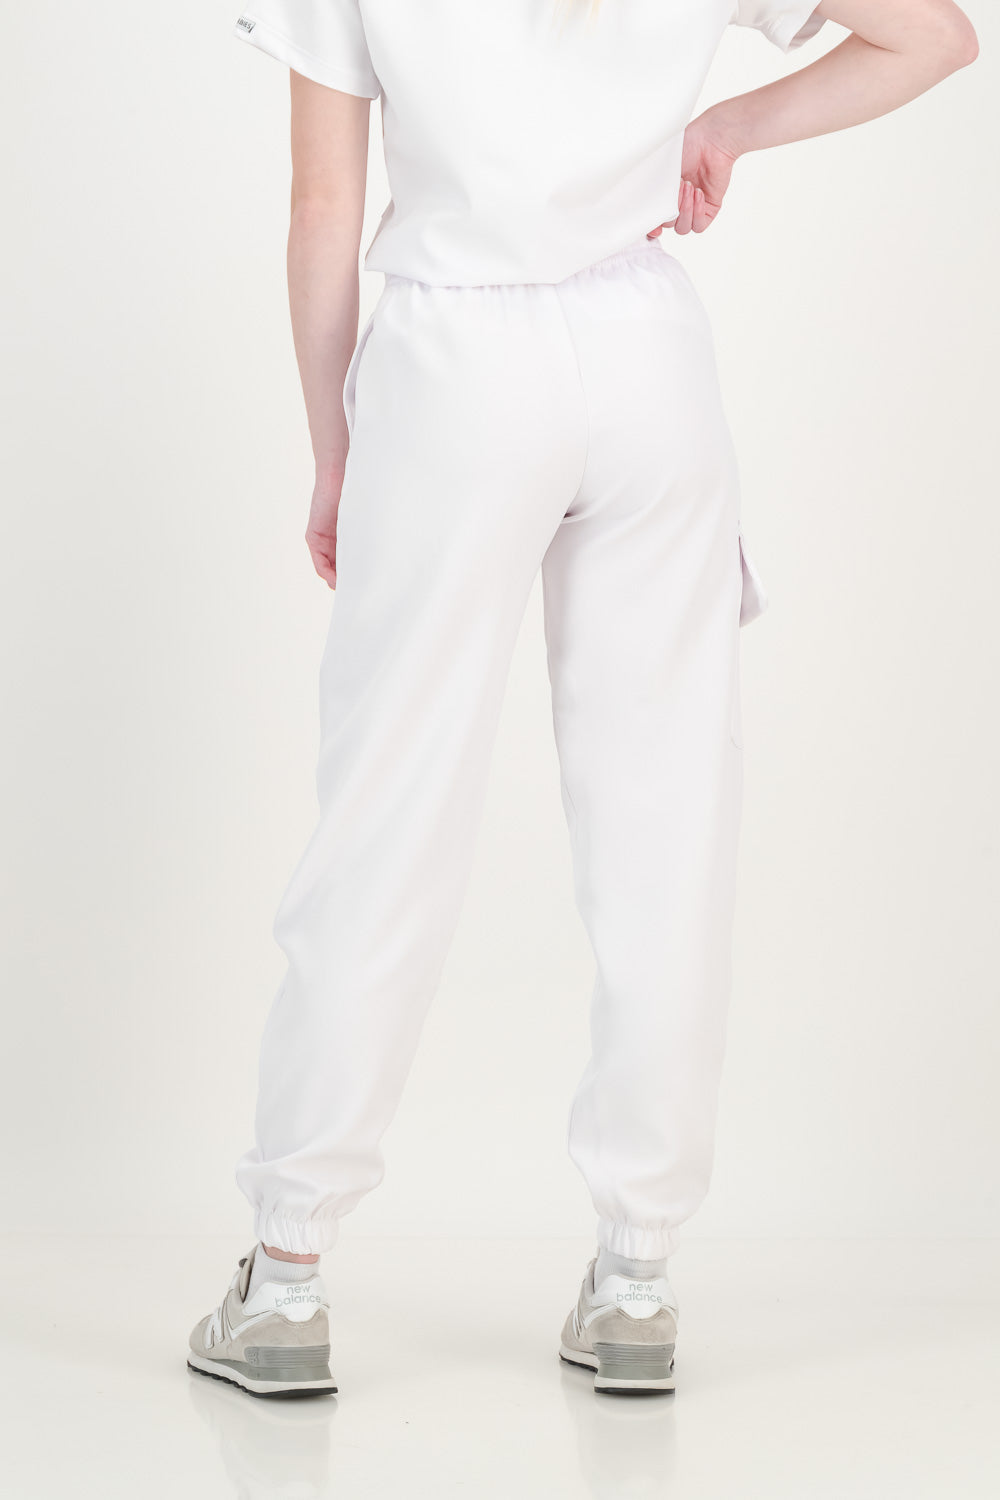 Women's Soft White Scrub Pants